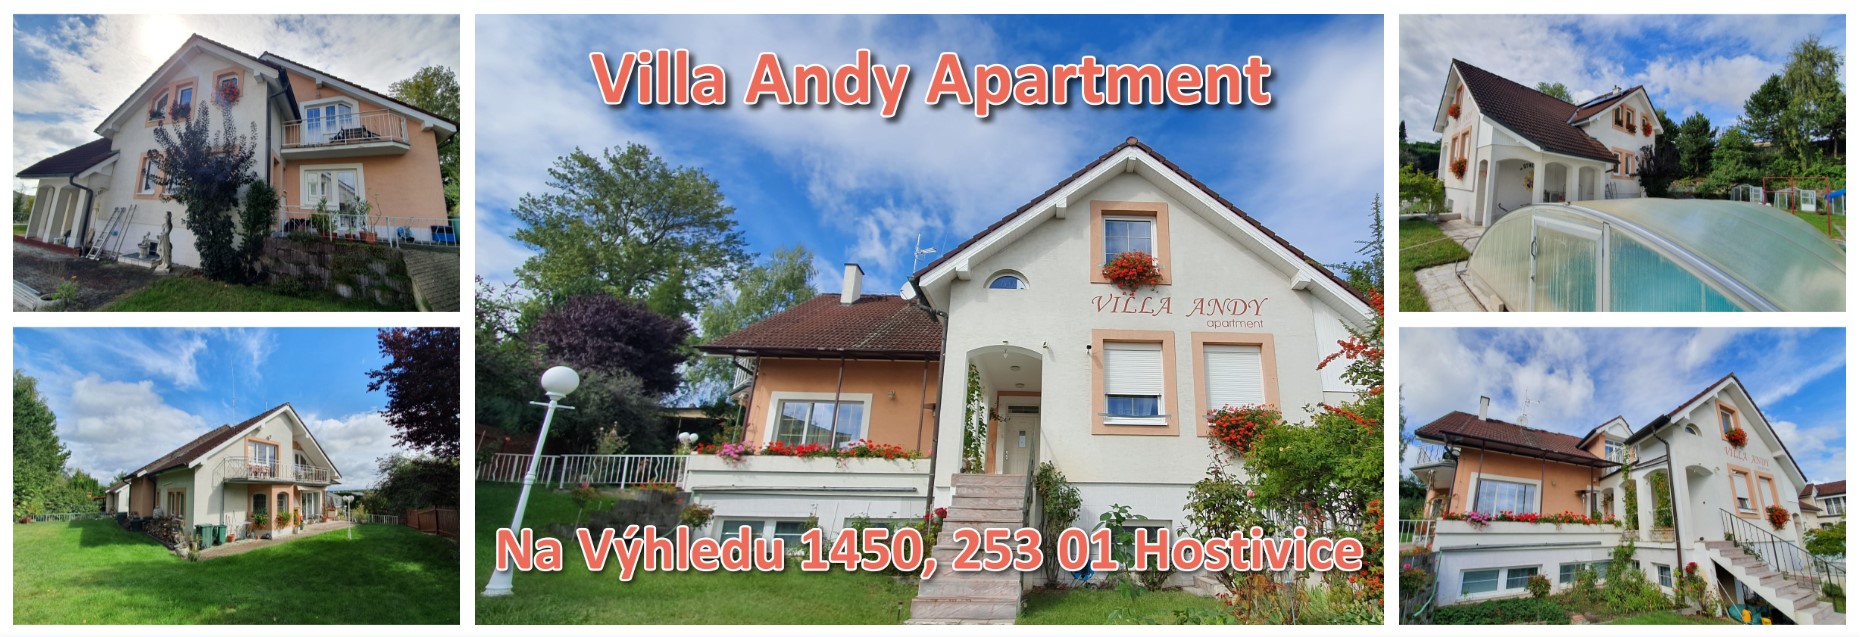 Villa Andy Apartement